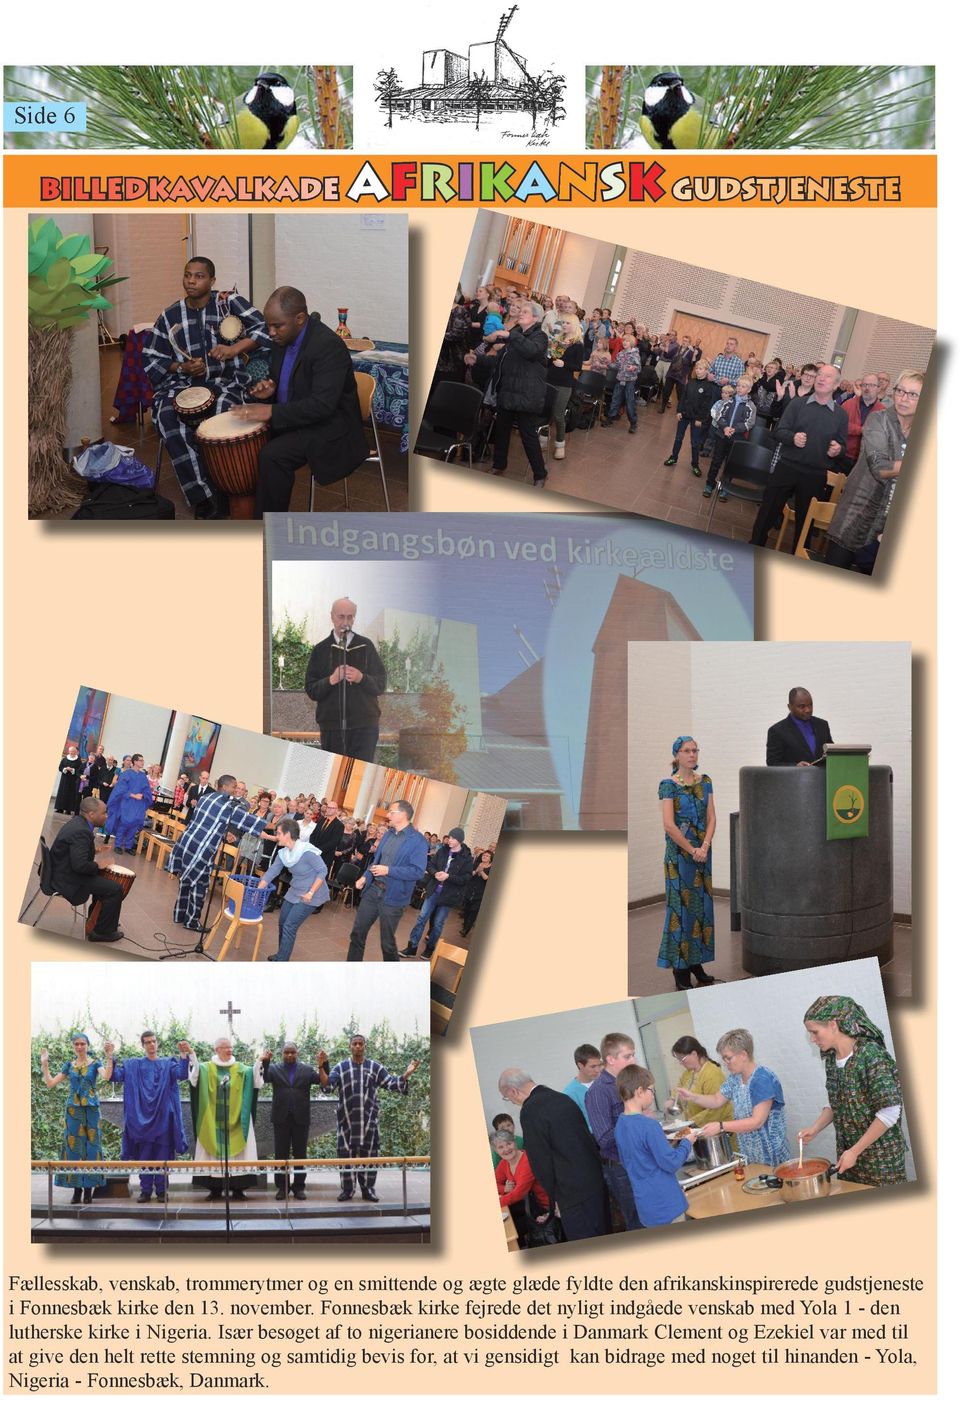 Fonnesbæk kirke fejrede det nyligt indgåede venskab med Yola 1 - den lutherske kirke i Nigeria.